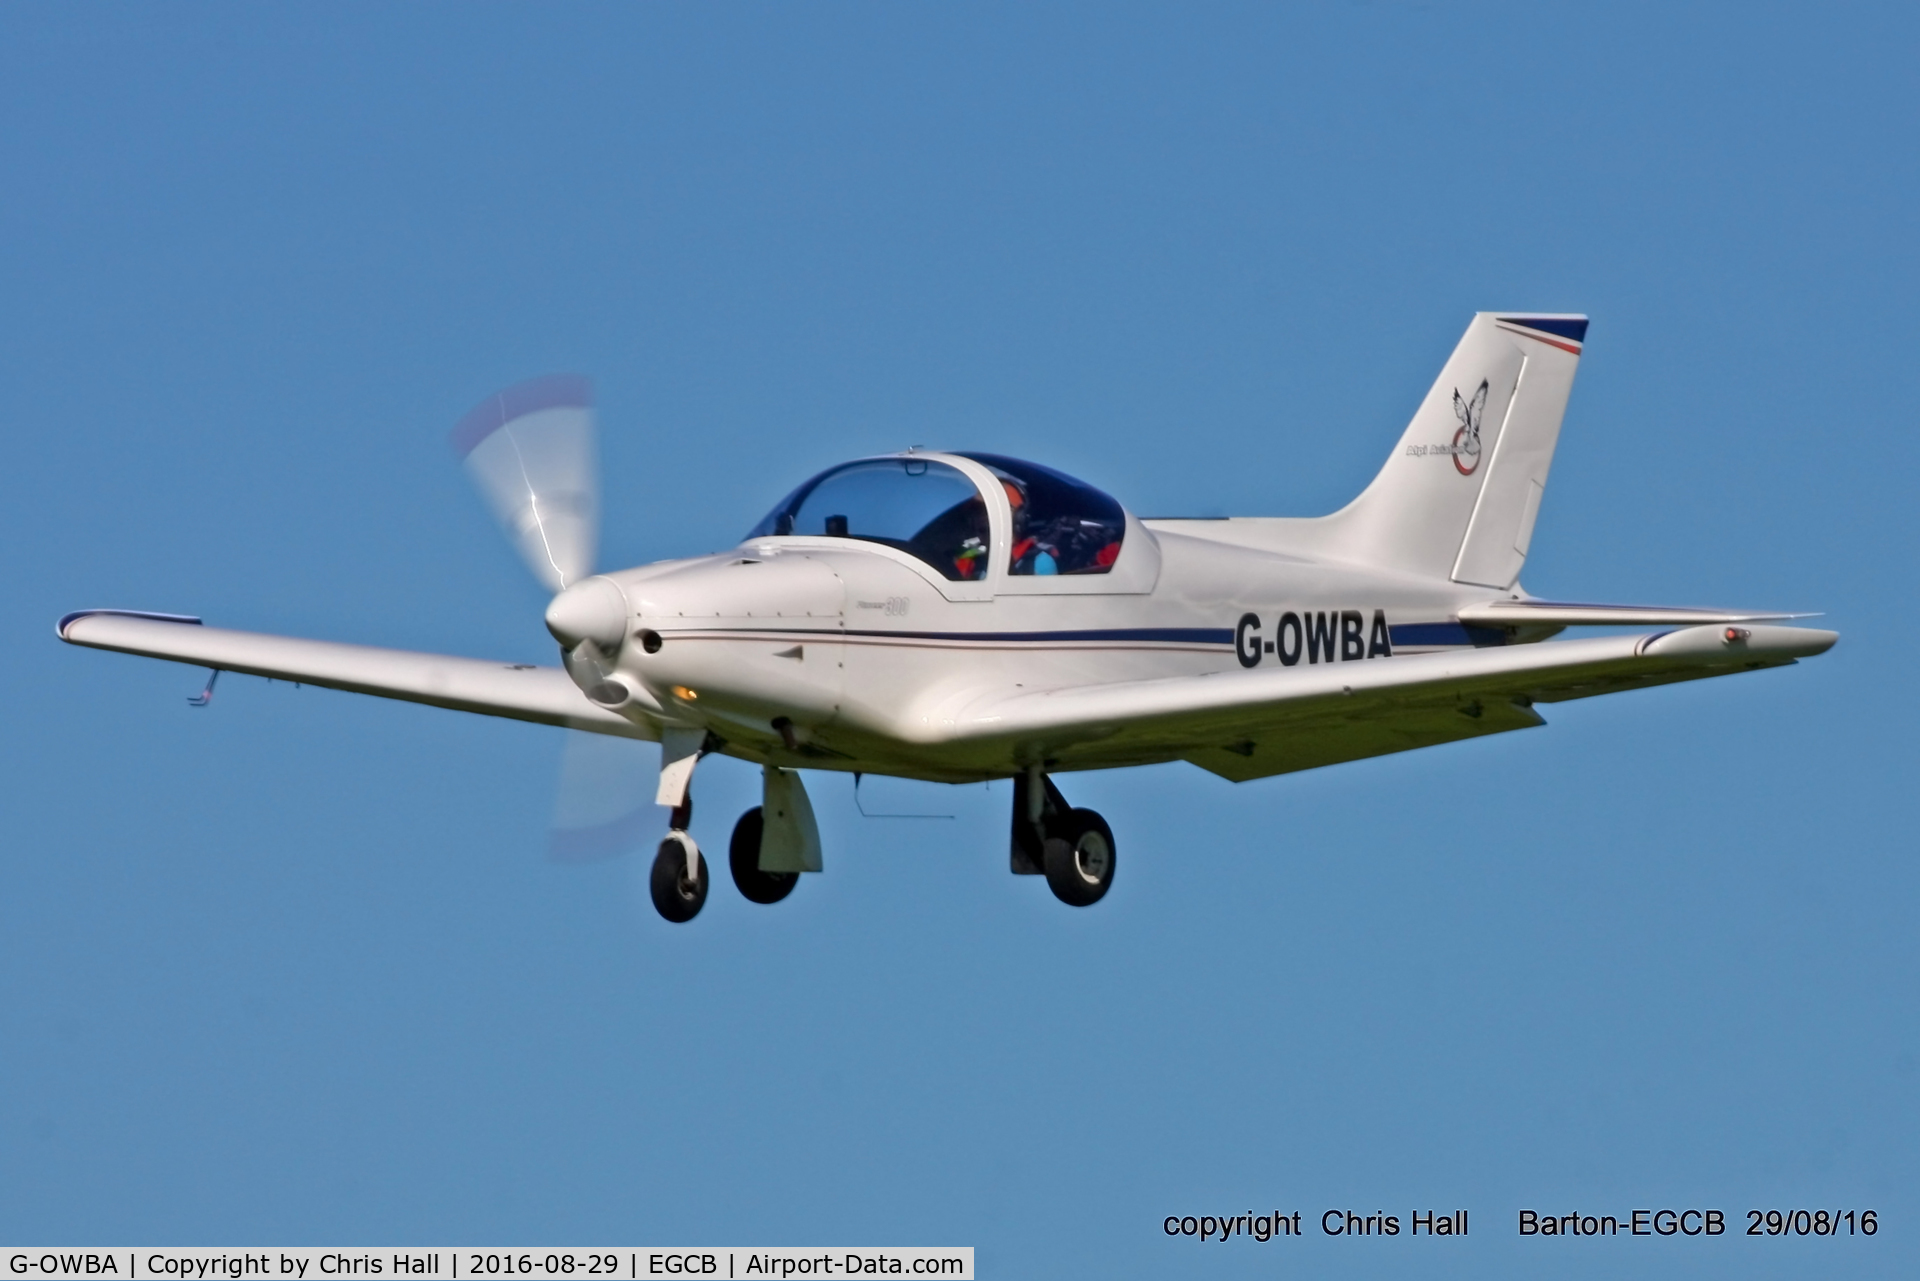 G-OWBA, 2013 Alpi Aviation Pioneer 300 C/N LAA 330-15155, at Barton